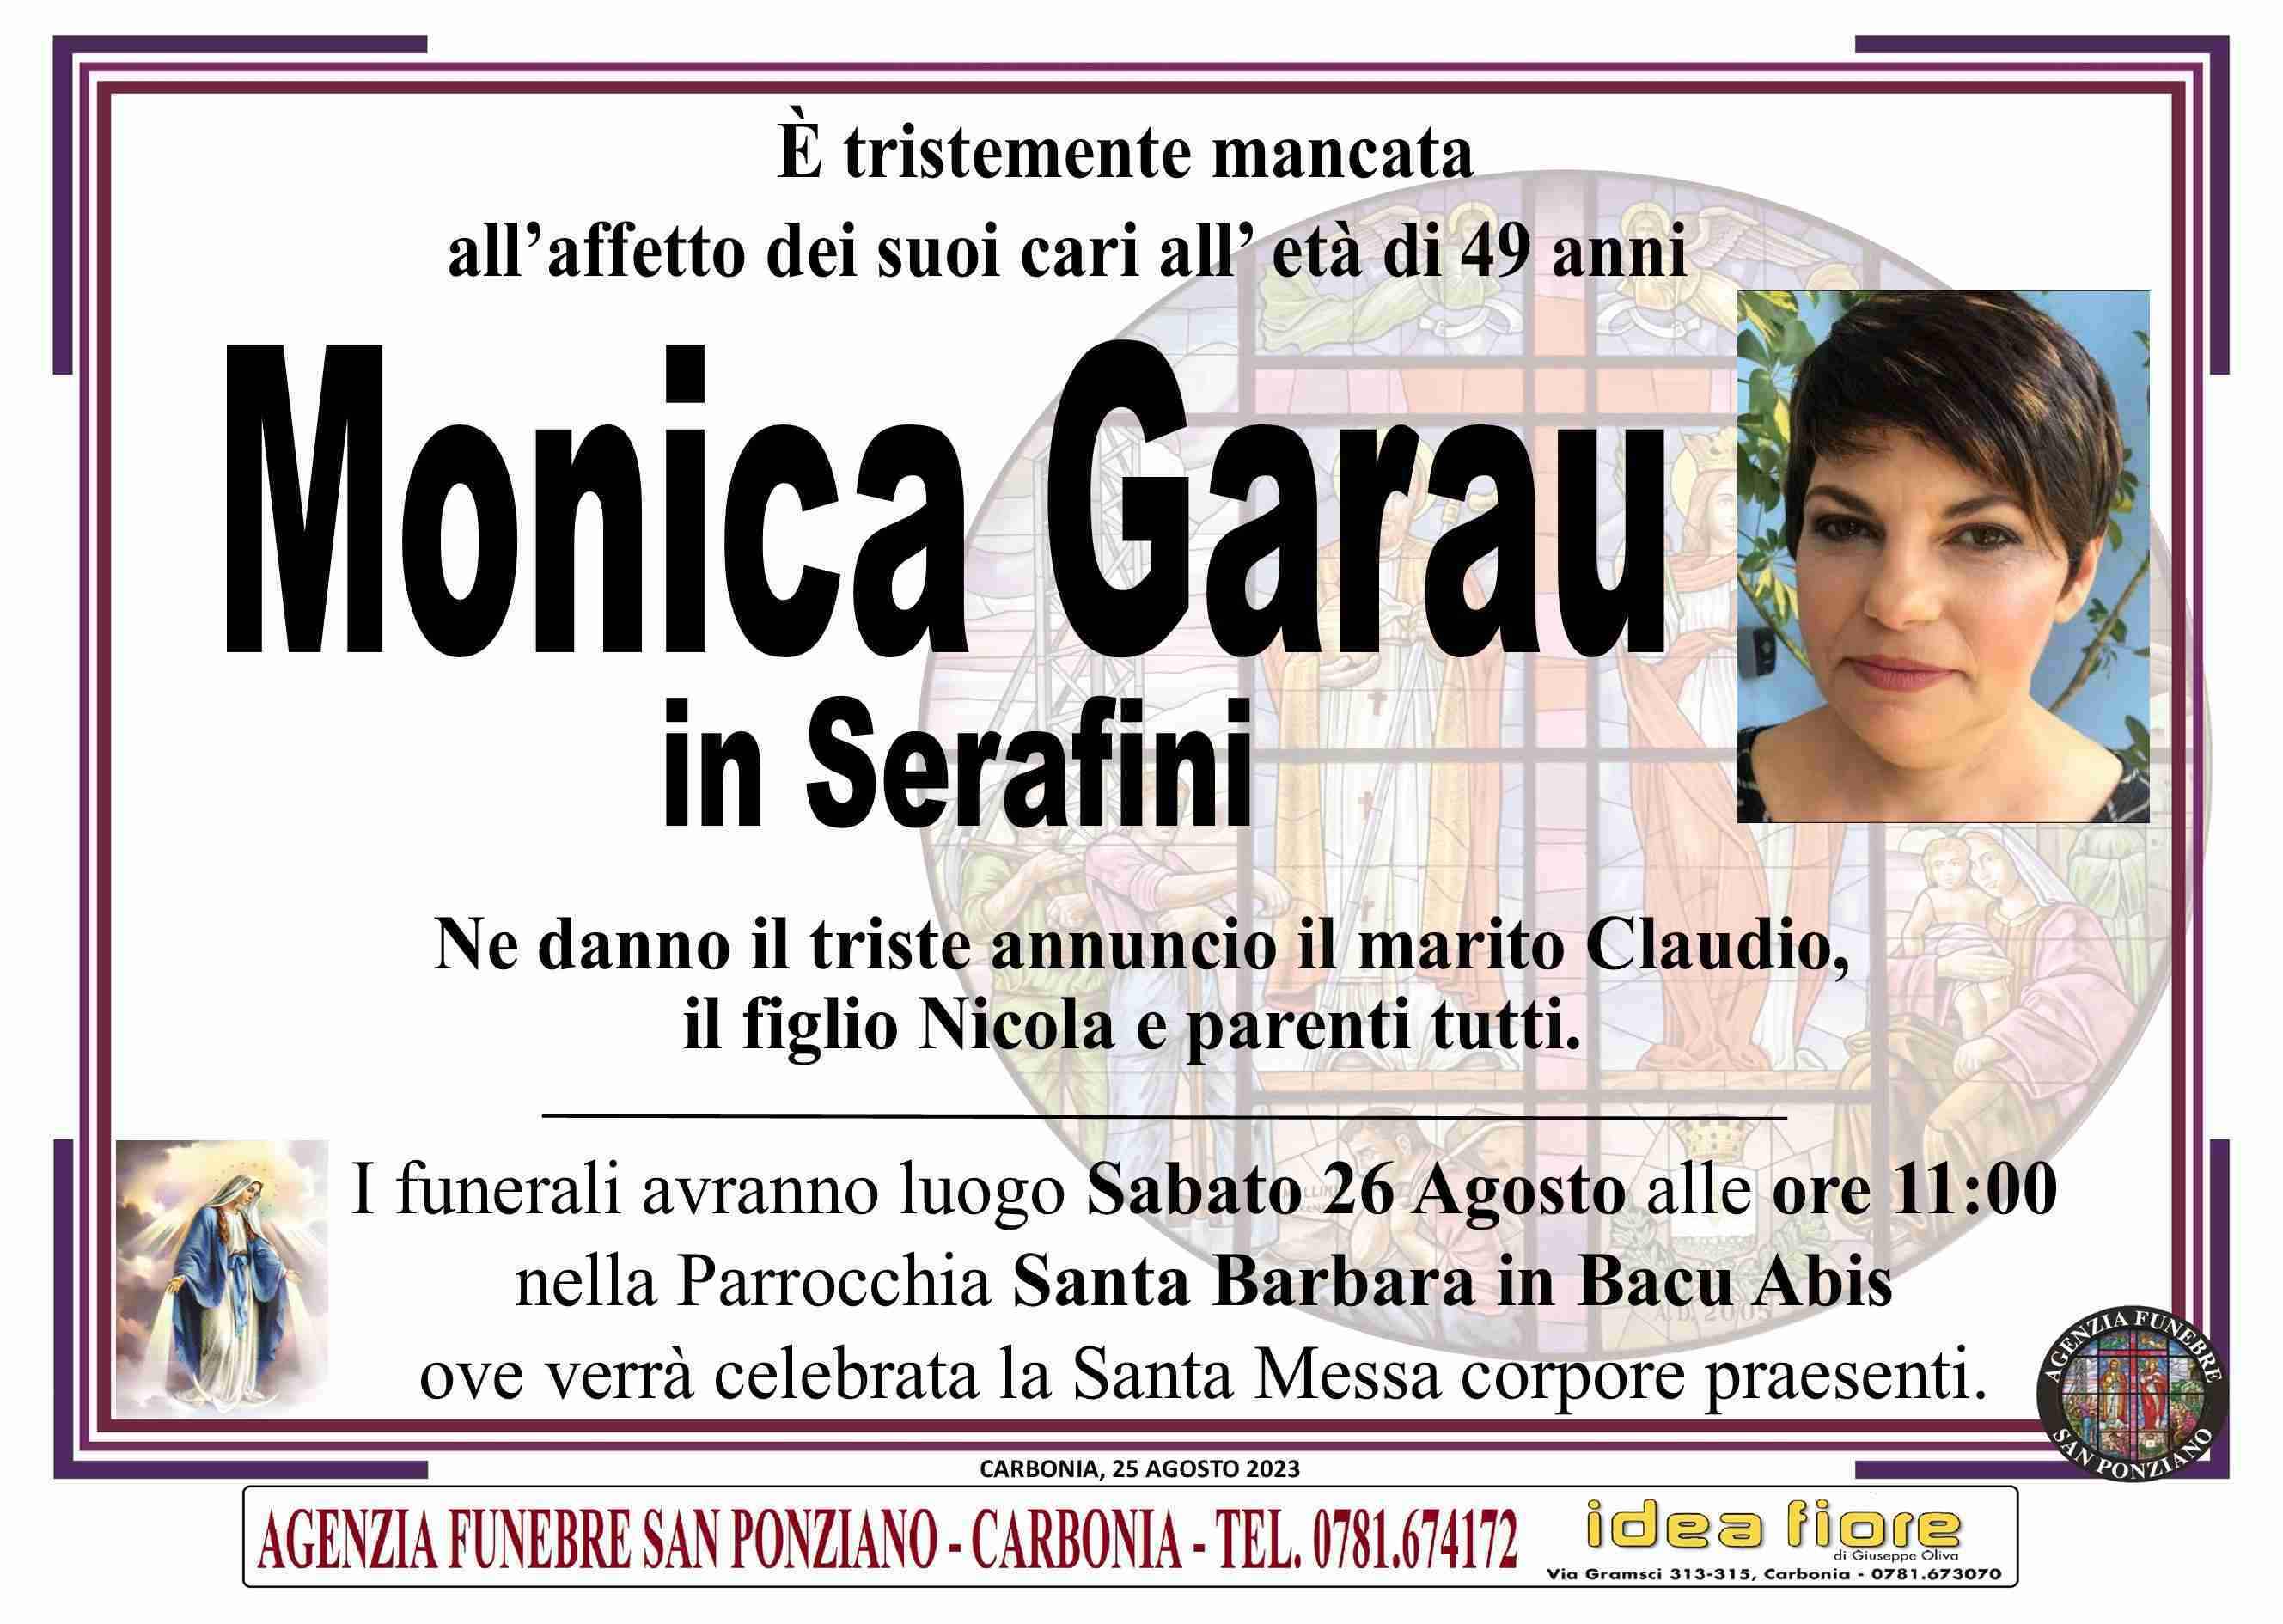 Monica Garau